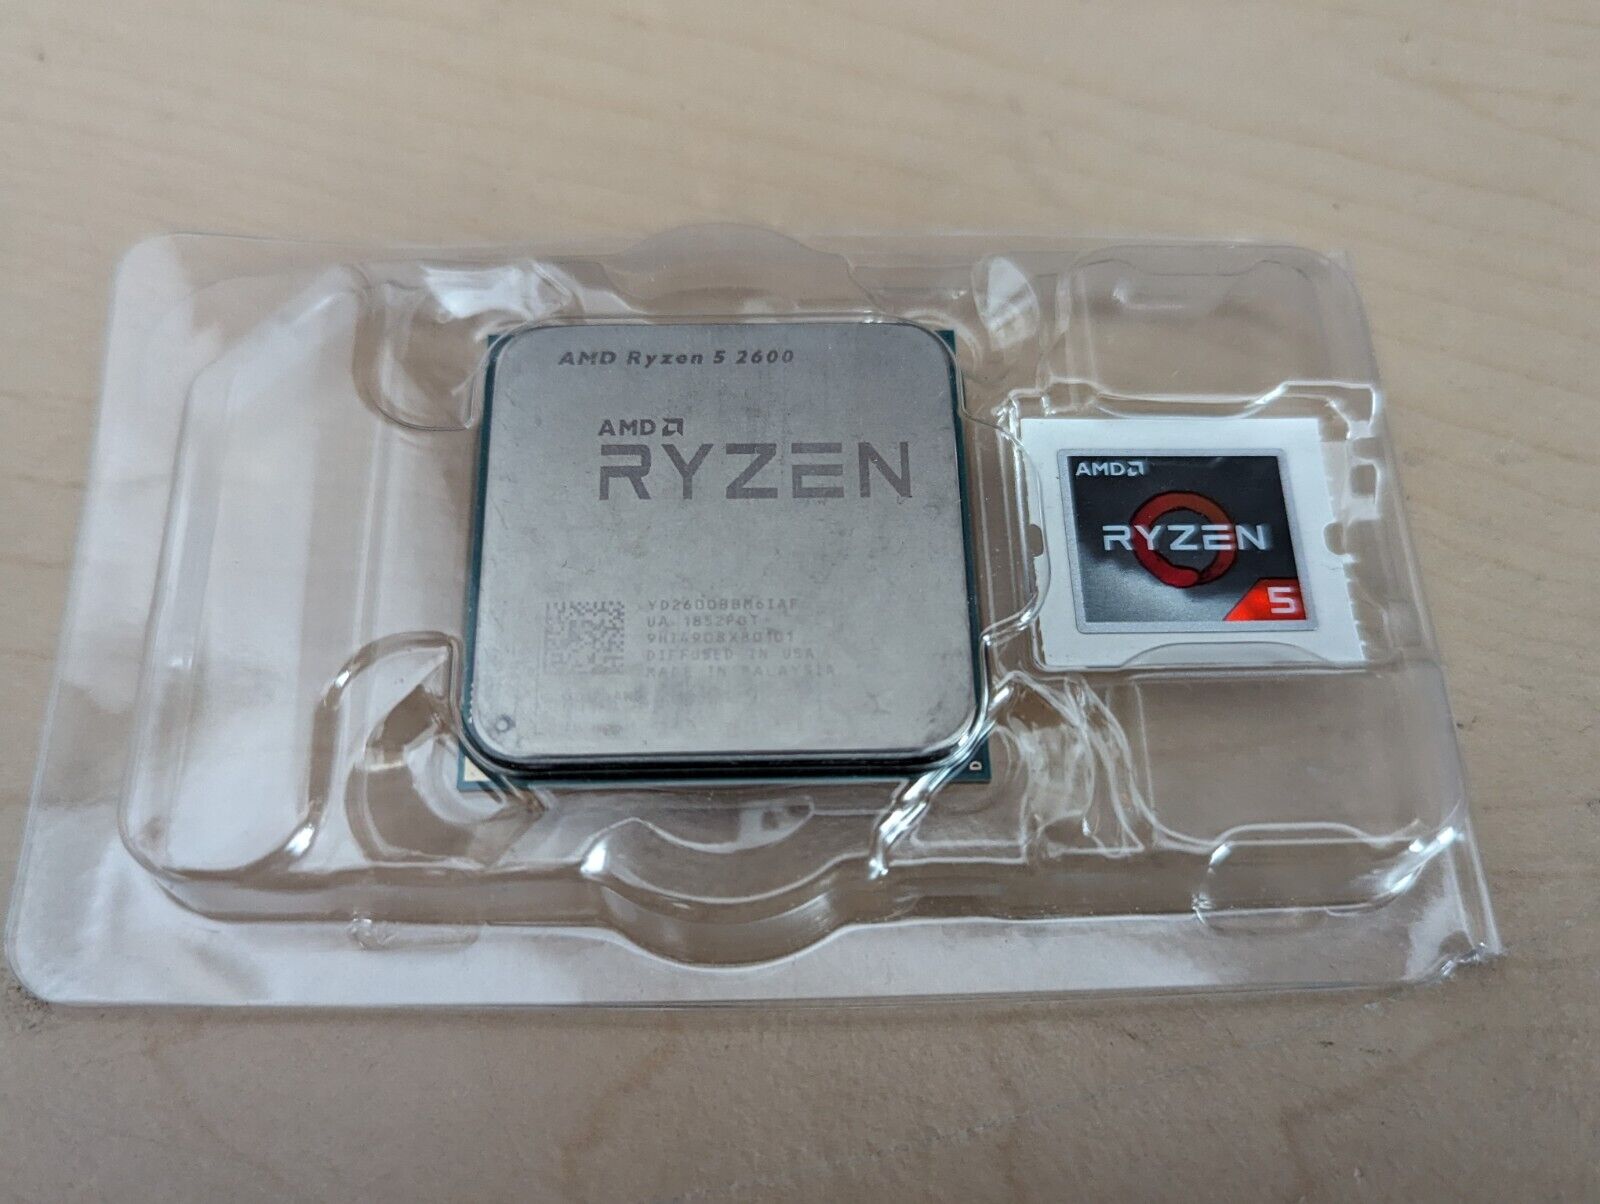 AMD Ryzen 2nd Gen 5 2600 - 3.9 GHz Six Core (YD2600BBM6IAF) Processor w/ Decal